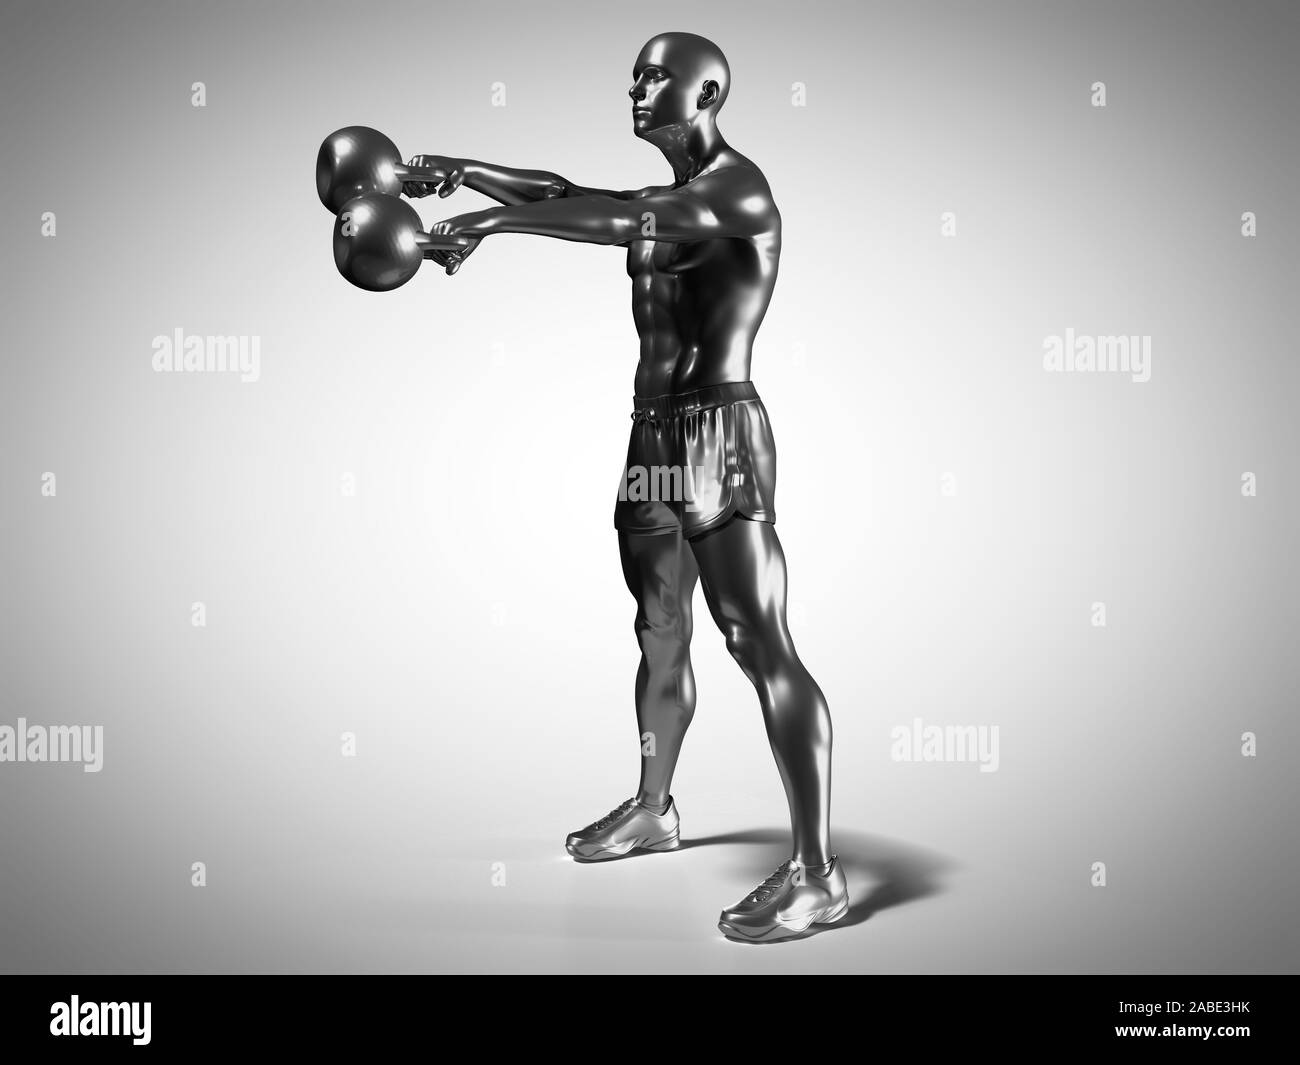 Médicalement en rendu 3d illustration d'un précise metallic man faisant un kettlebell workout Banque D'Images